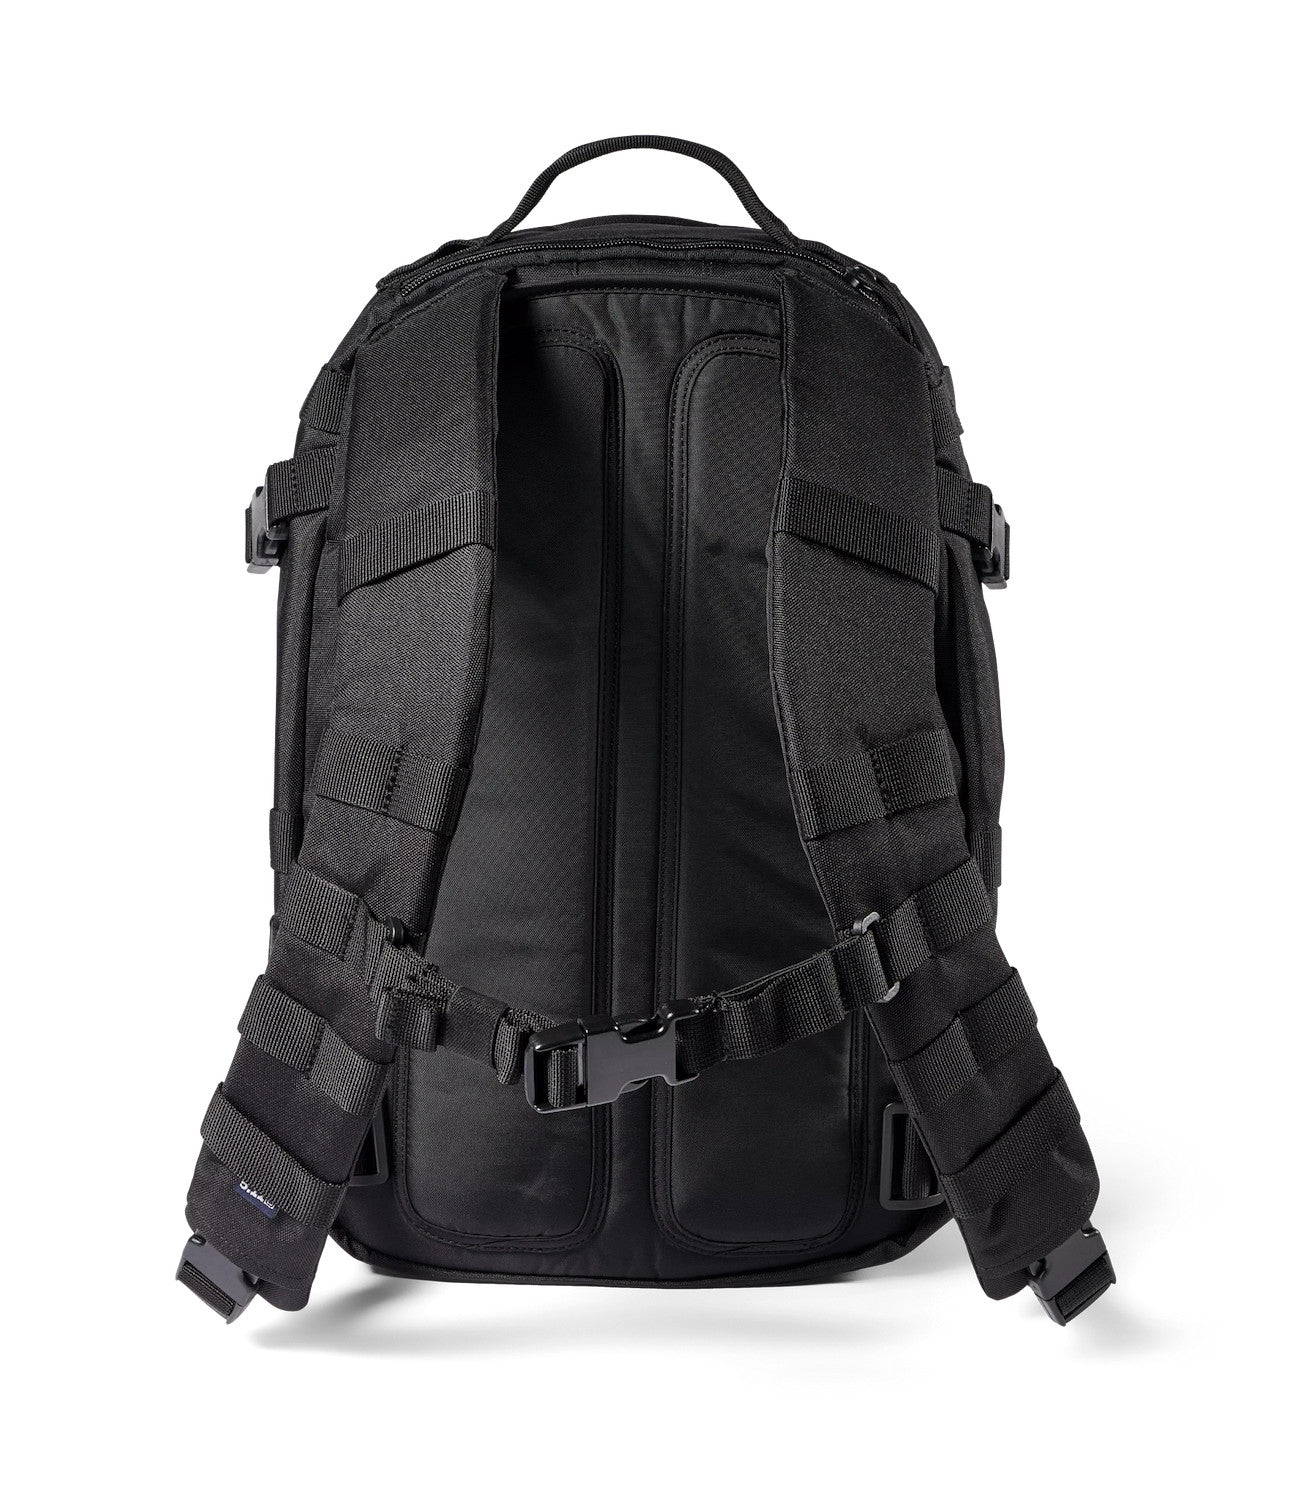 56637 - Fast-Tac 12 Backpack 26L